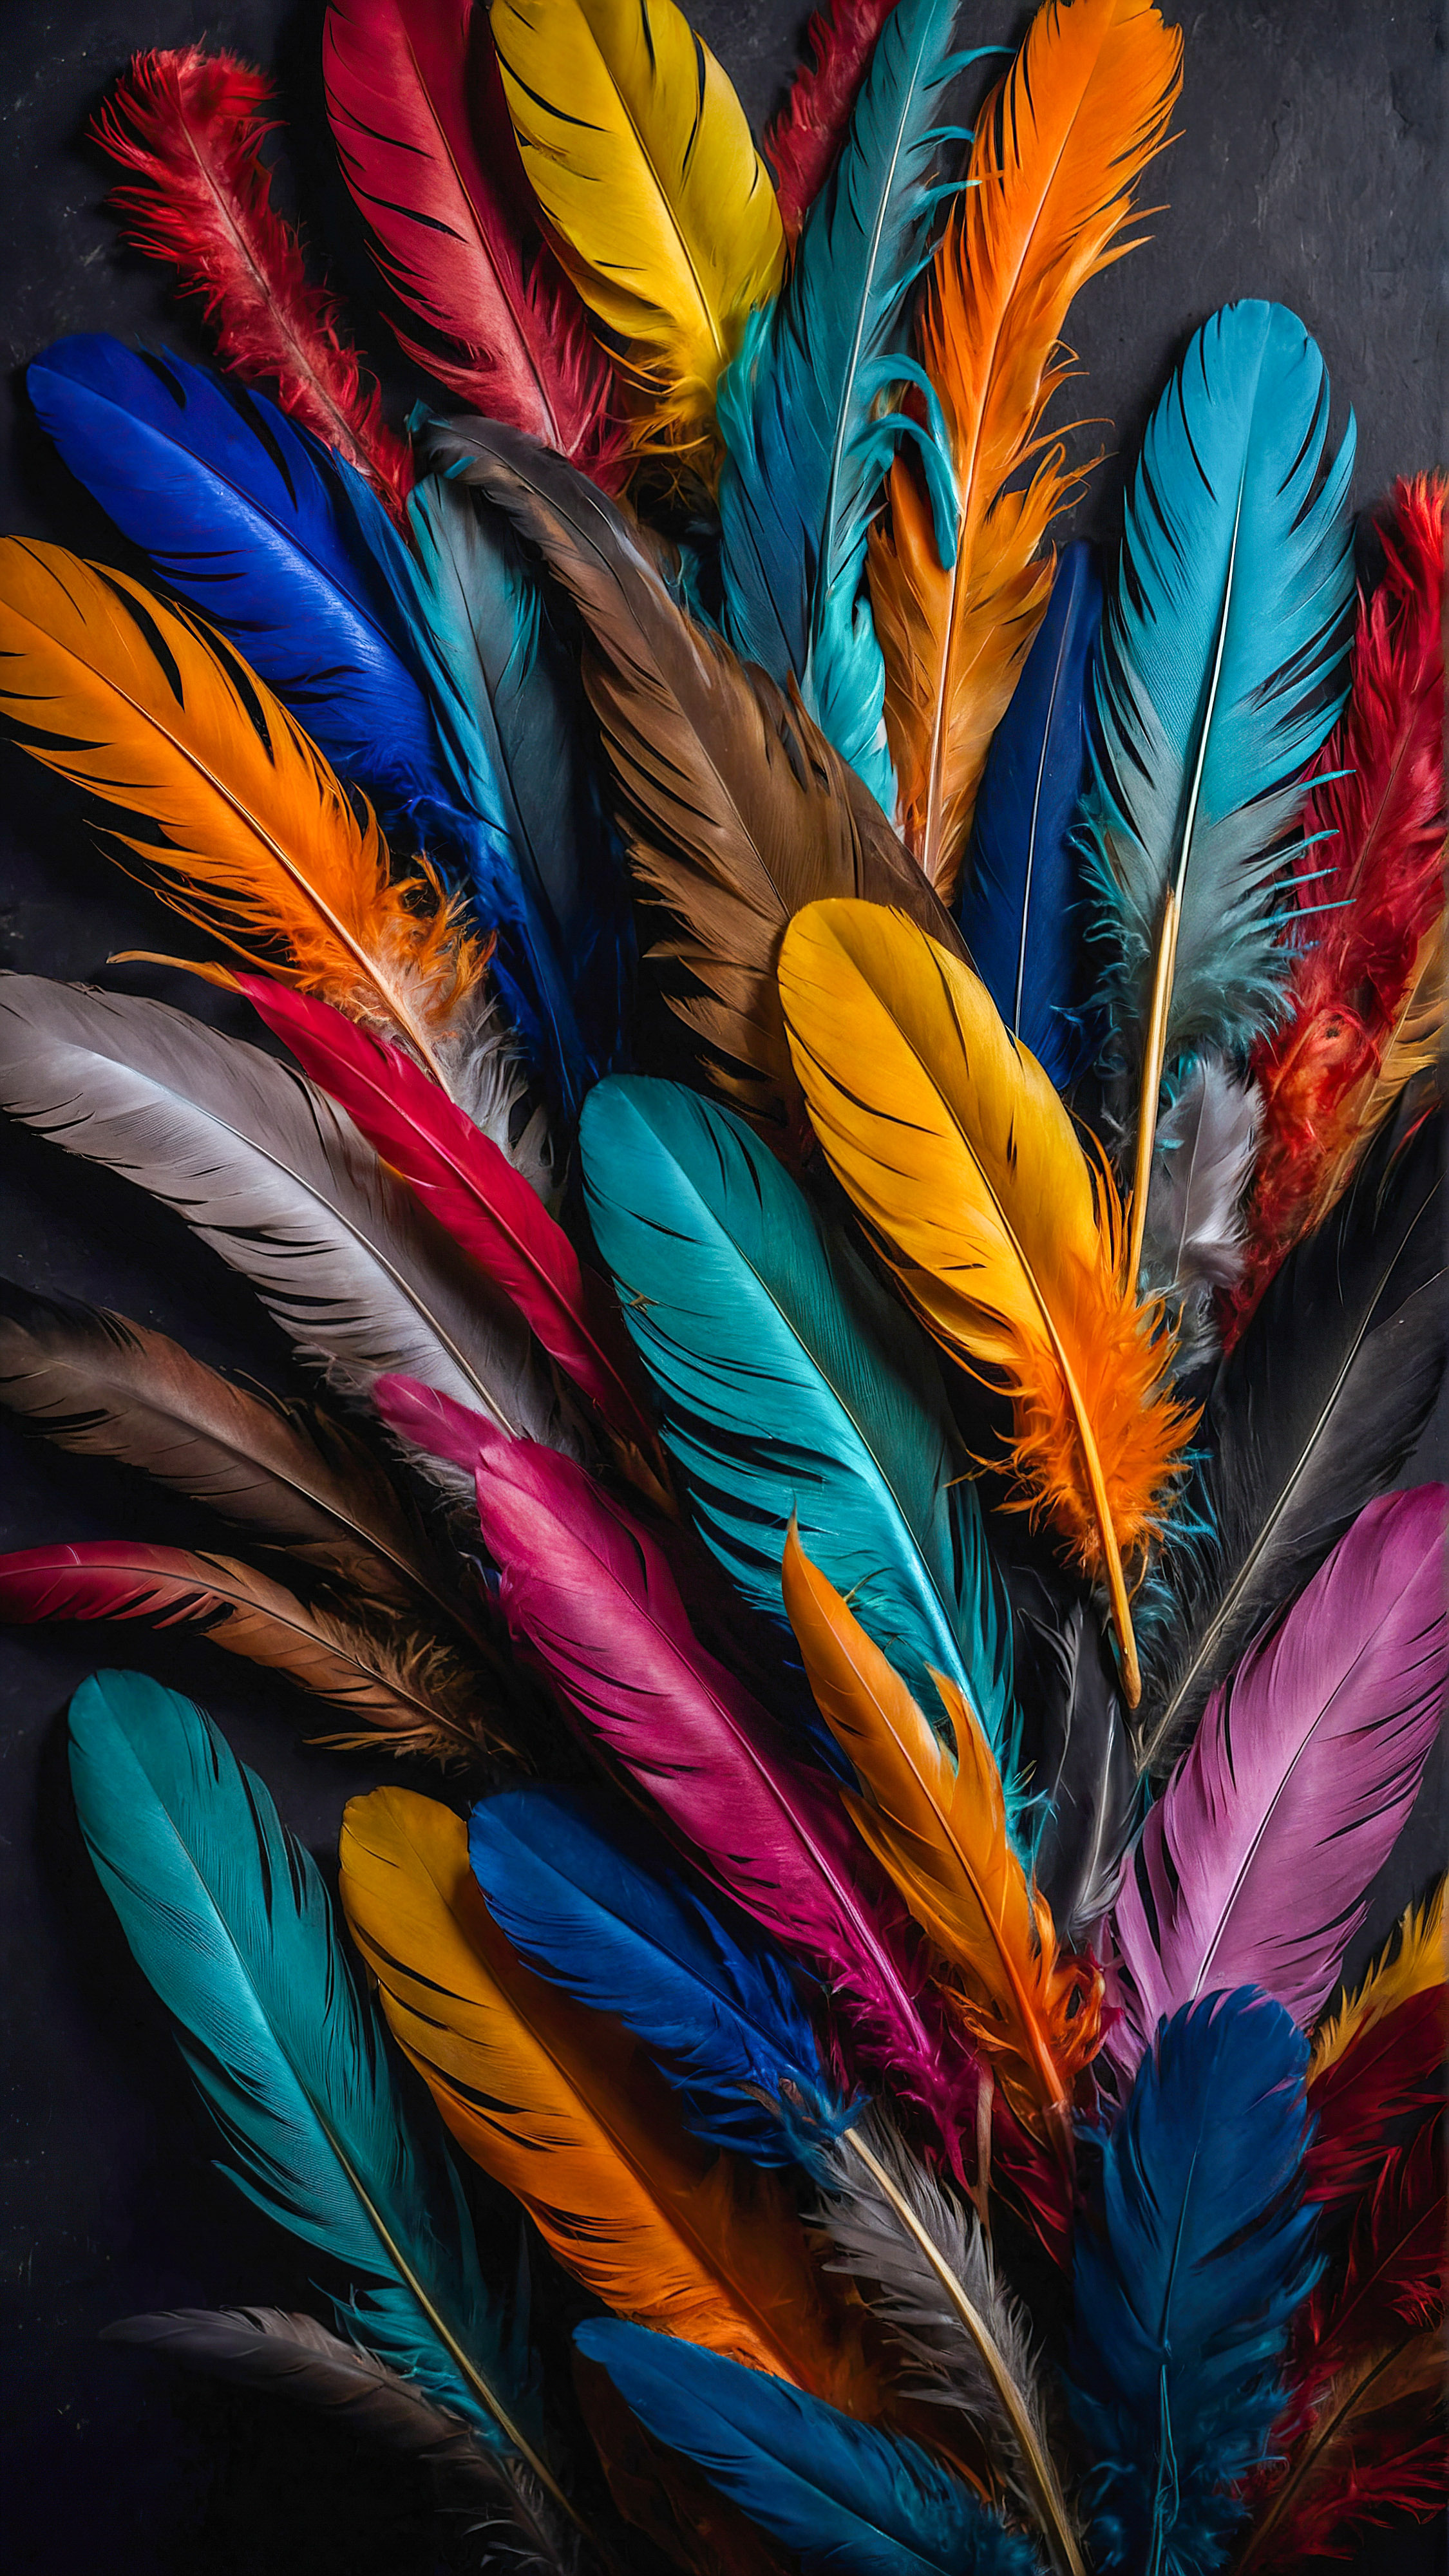 Ressentez l'effet apaisant d'un fond d'écran esthétique pastel pour iPhone, présentant un arrangement abstrait de plumes colorées sur un fond sombre.